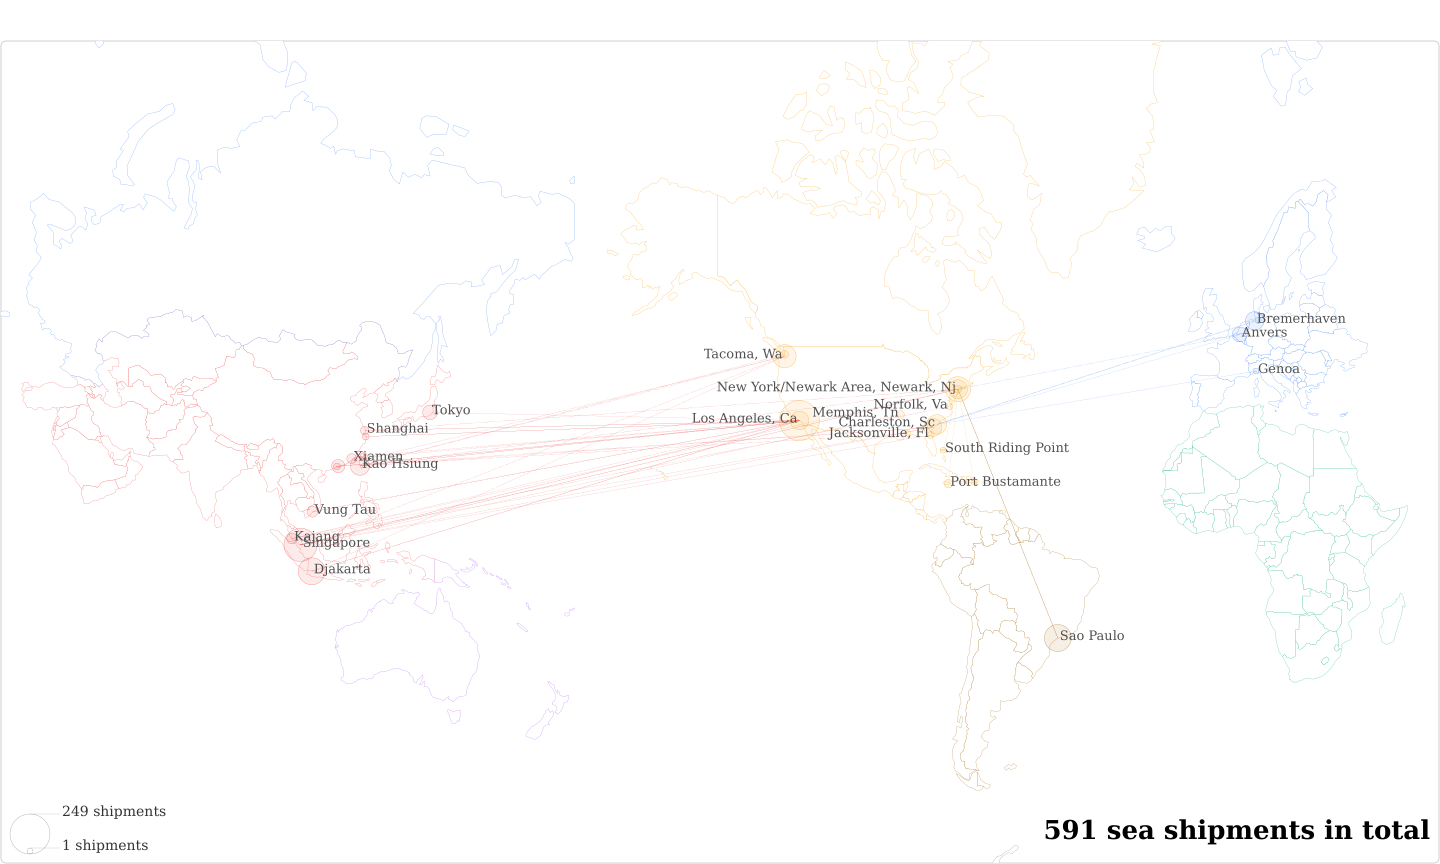 Komatsu % Pierce Dist's Imports Per Country Map